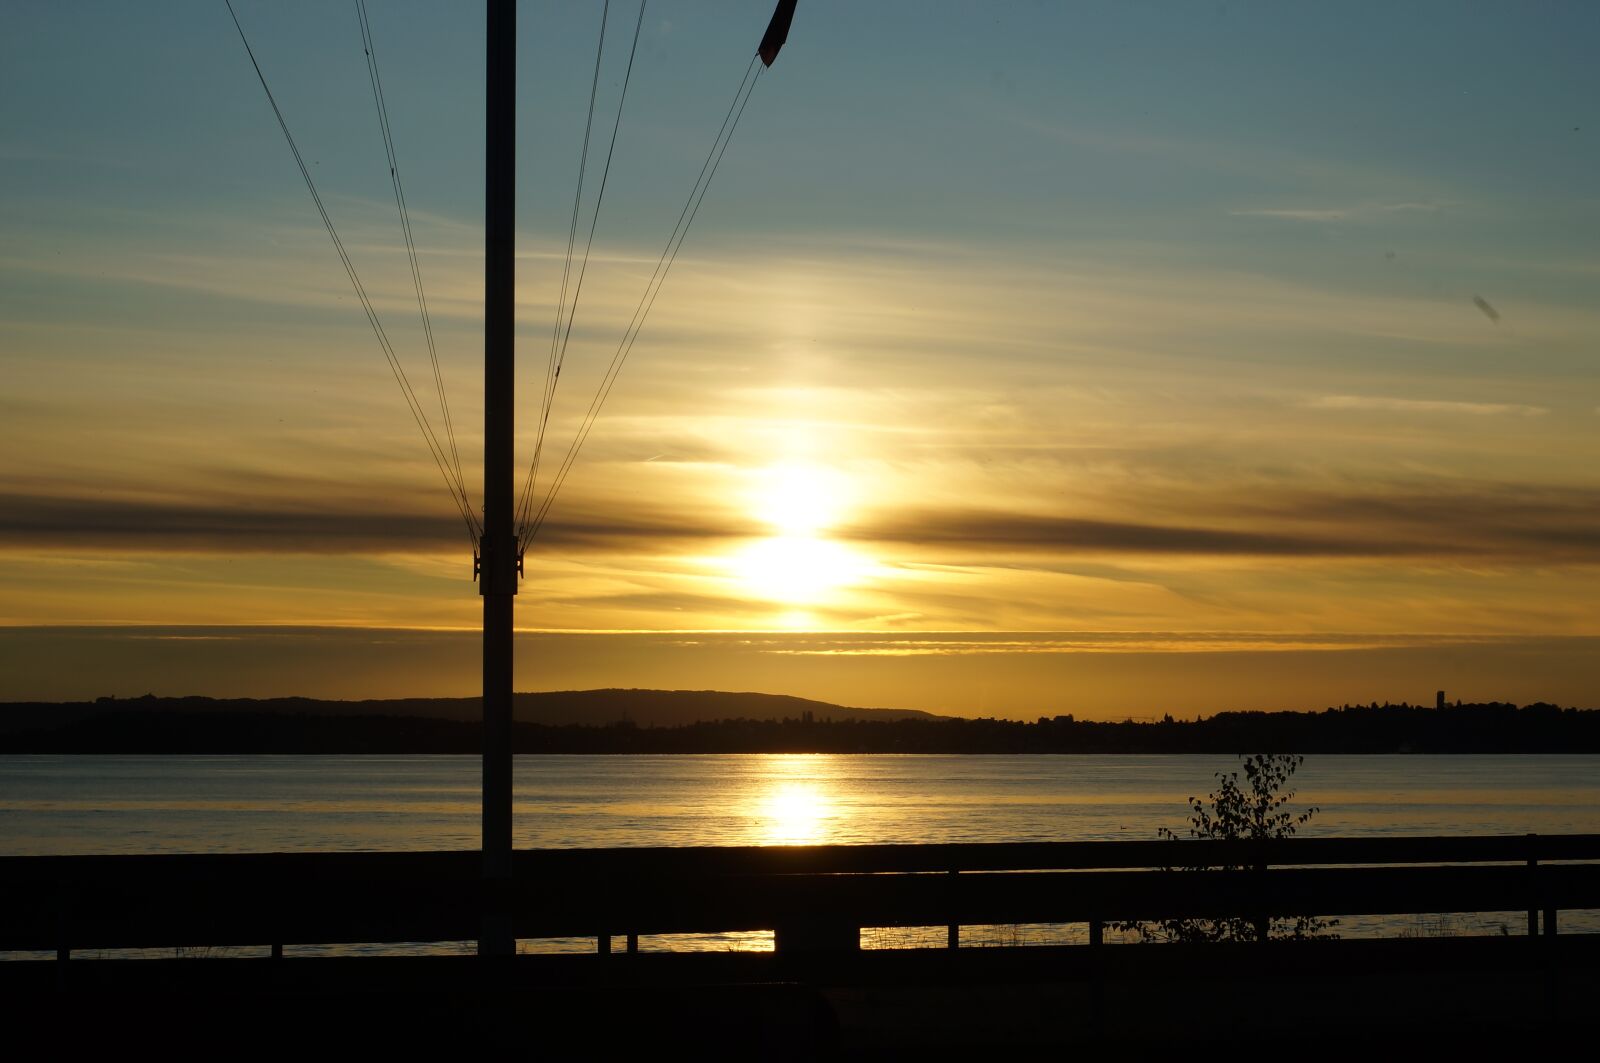 Minolta AF 50mm F1.7 sample photo. Lake constance, sunset, abendstimmung photography